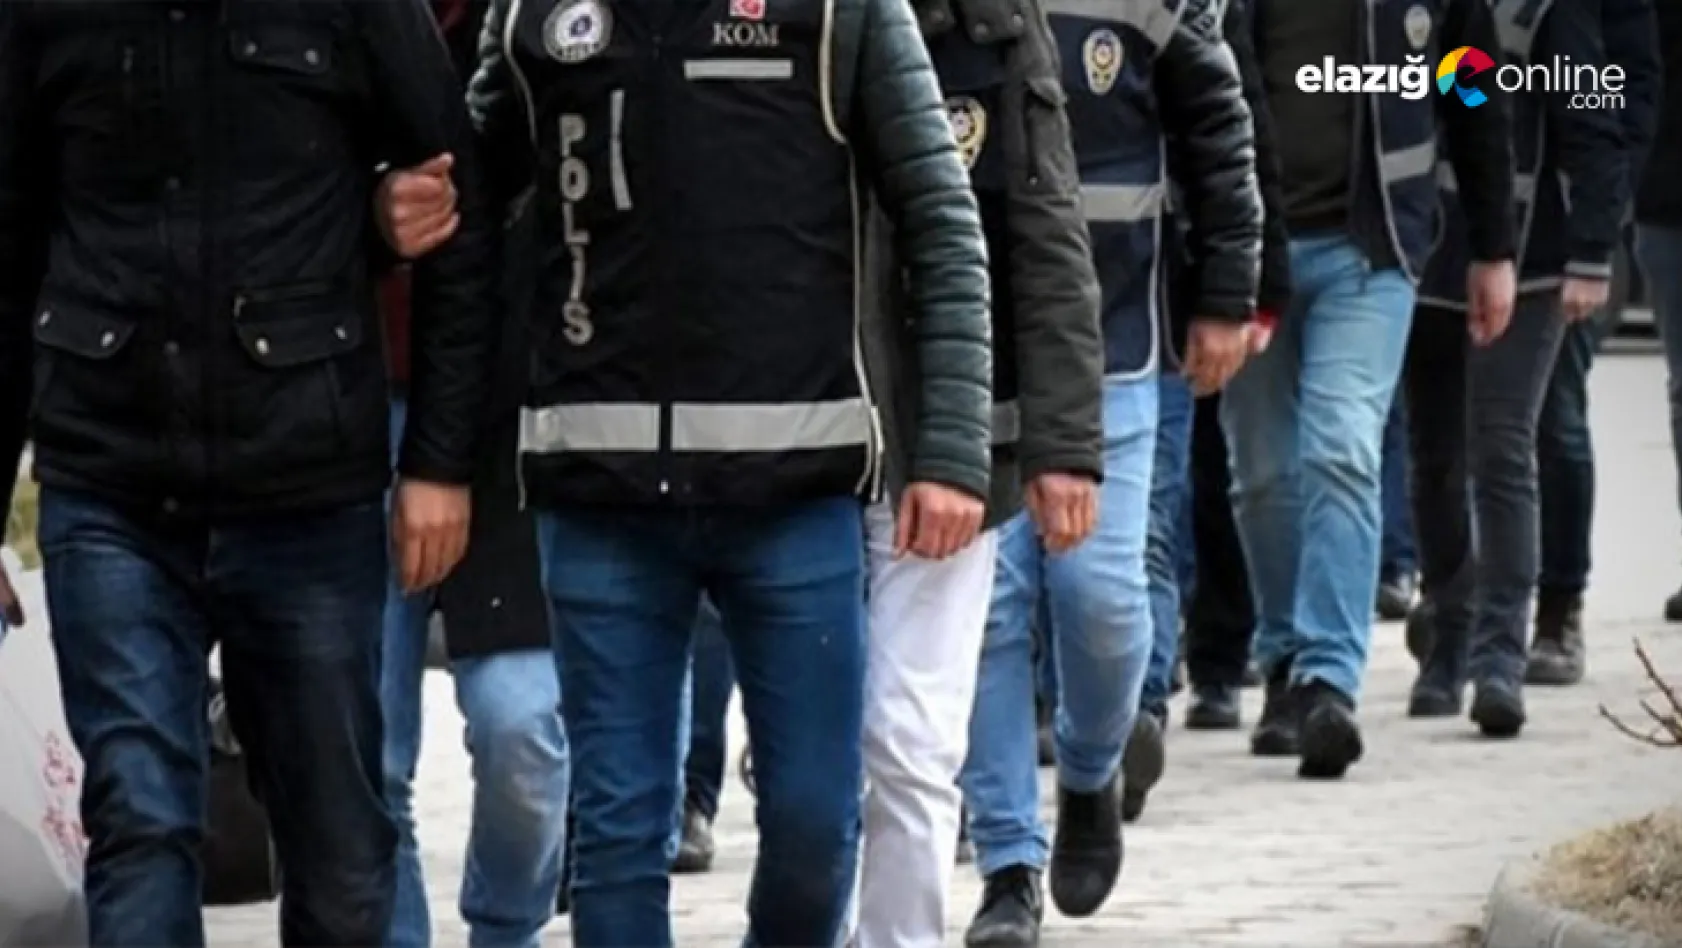 Elazığ'da son bir haftada, 30 şüpheli tutuklandı